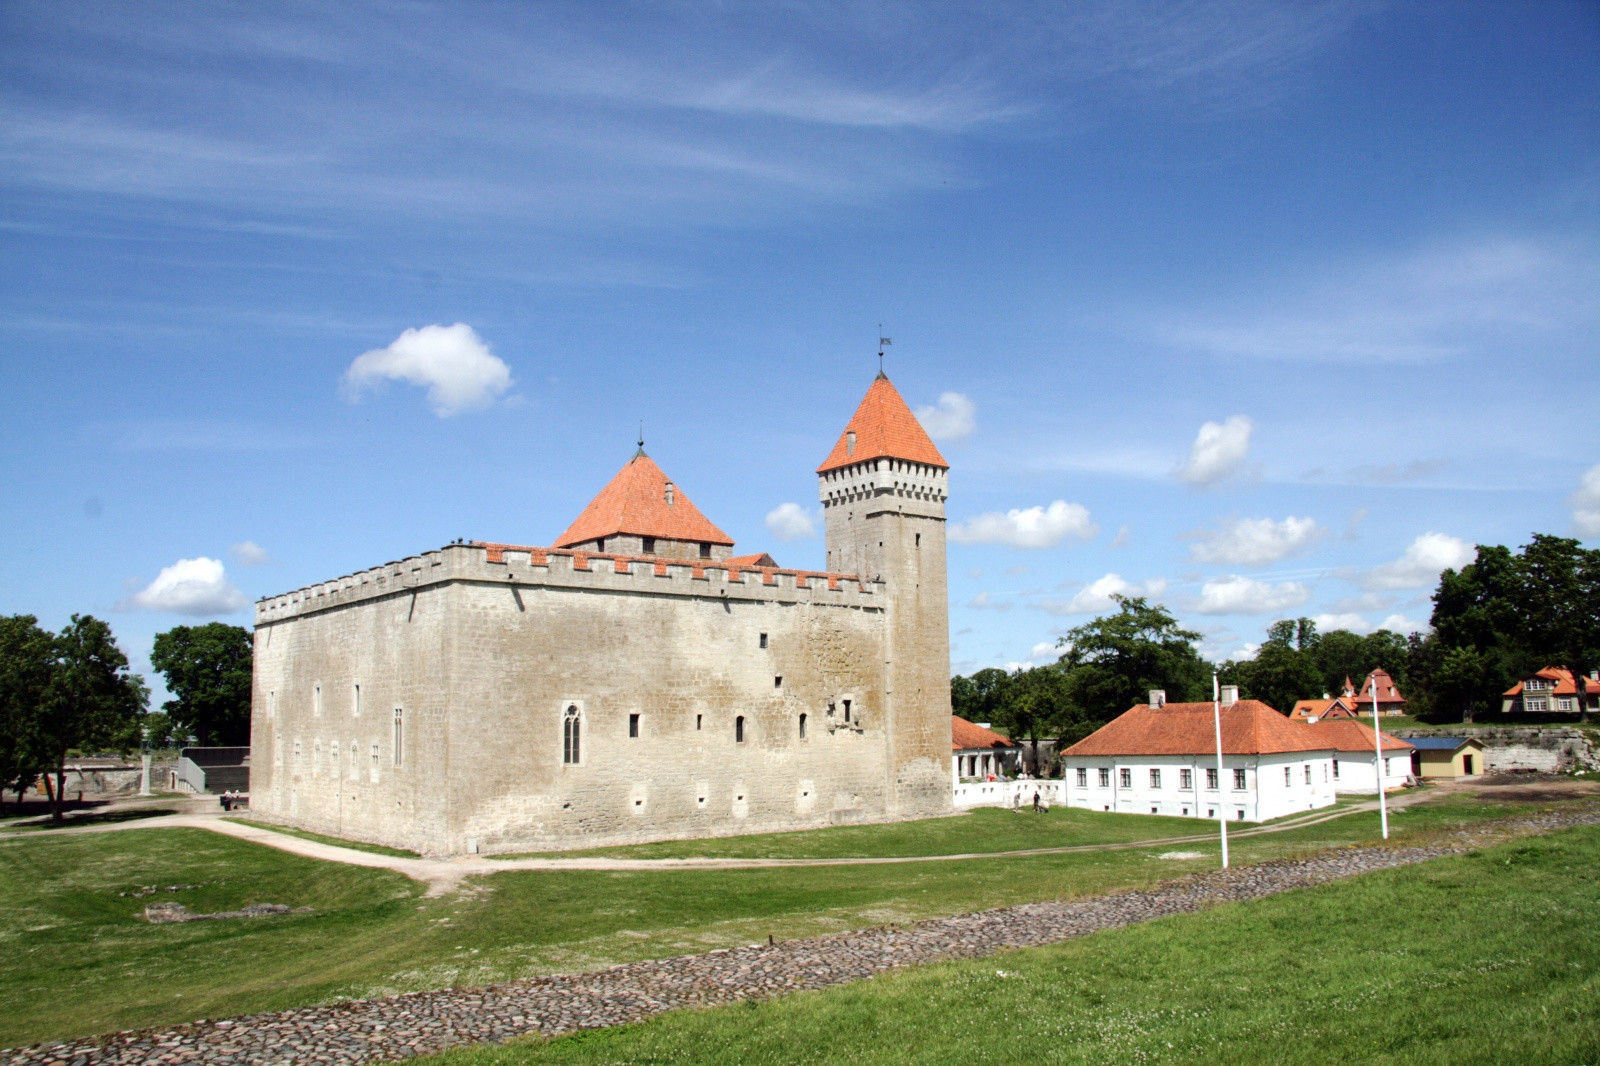 замок эстония